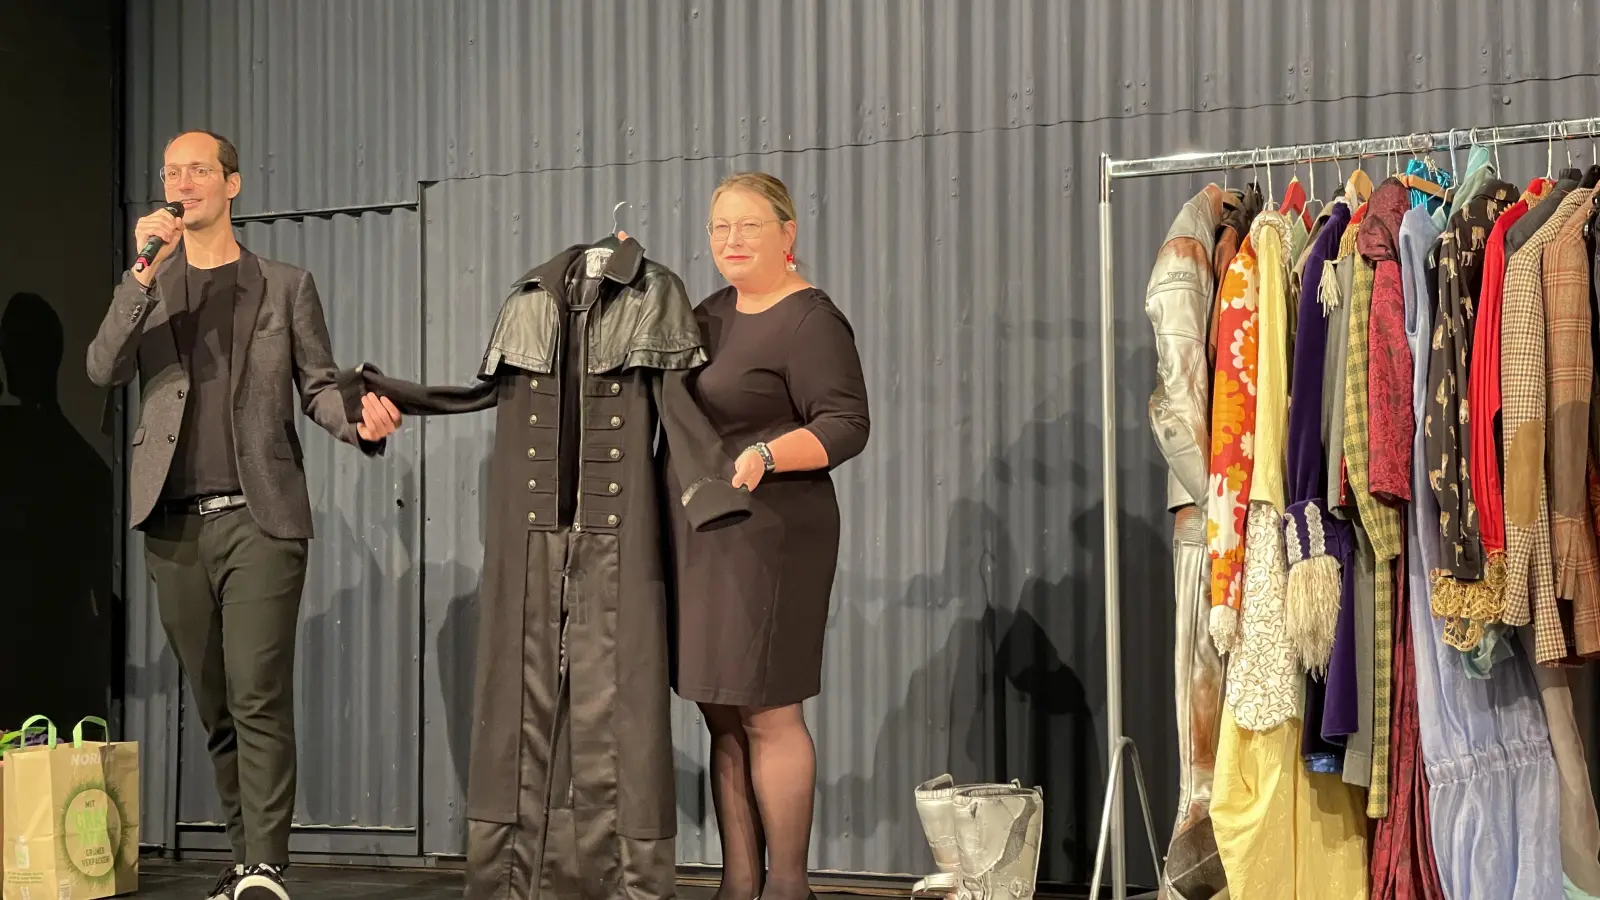 Jan Holtappels und Vera Goth vom Theater-Team preisen einige ziemlich schrille Kostüme an.  (Foto: Lara Hausleitner)